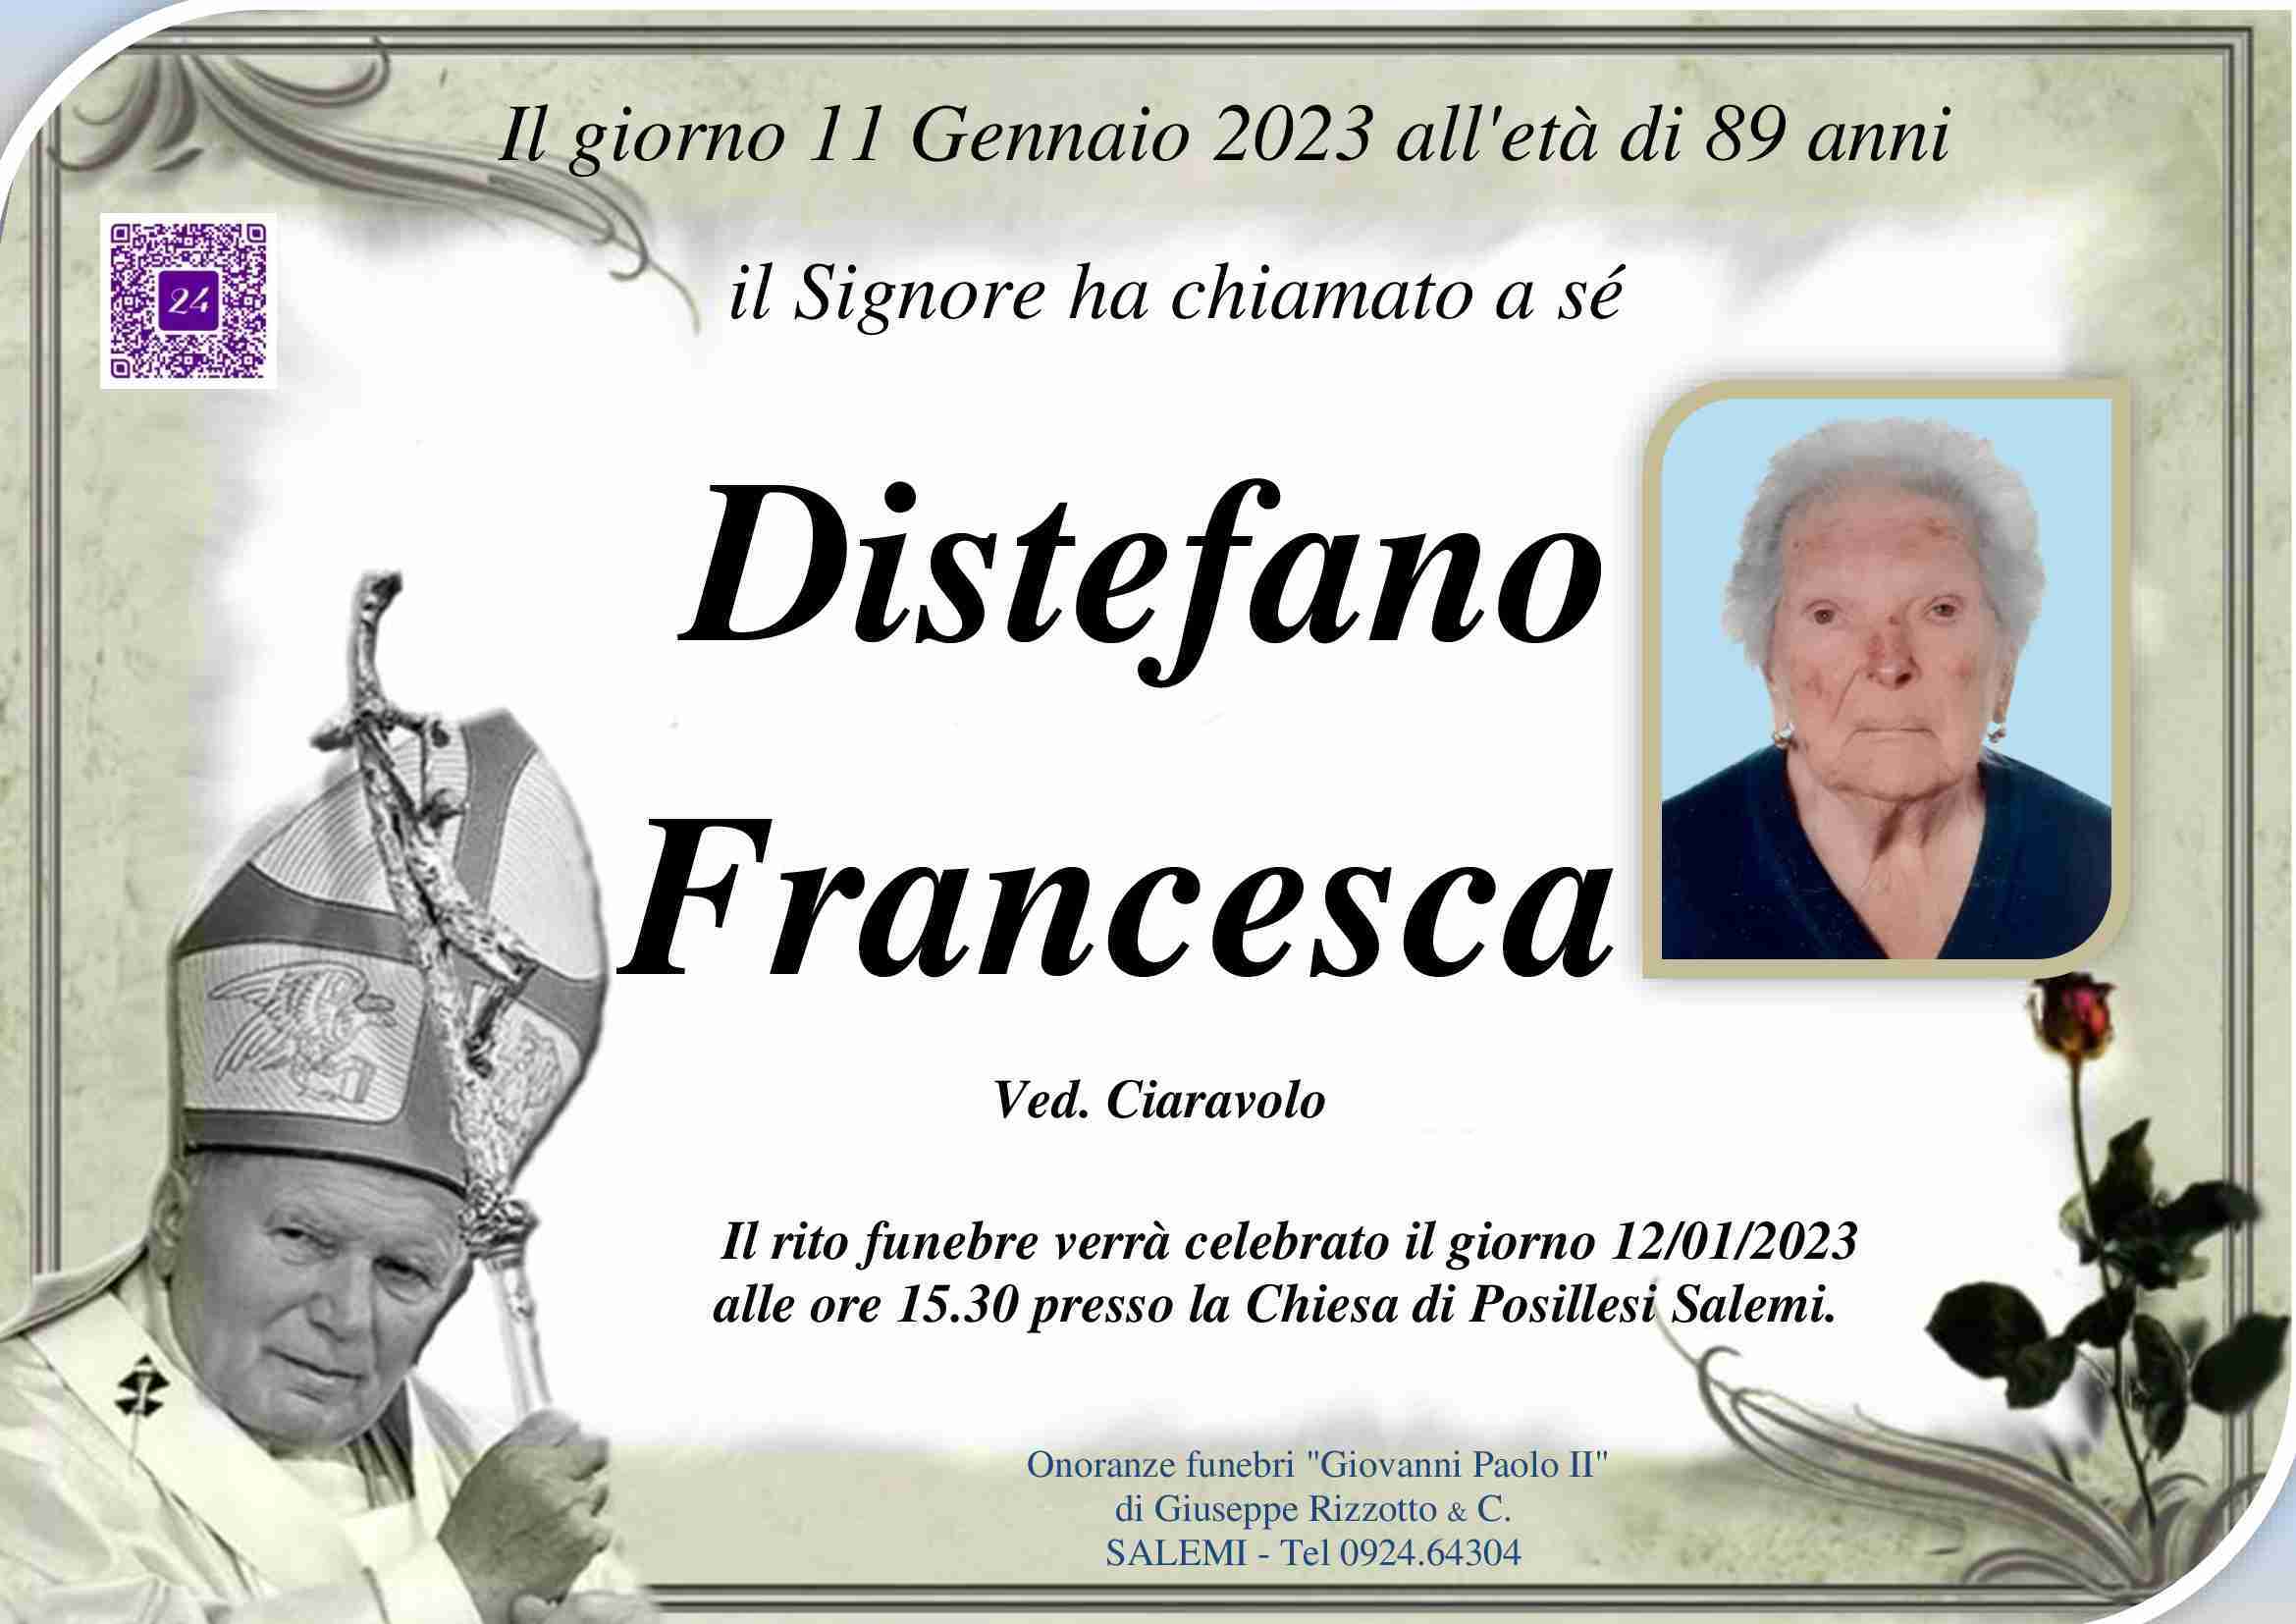 Francesca Distefano